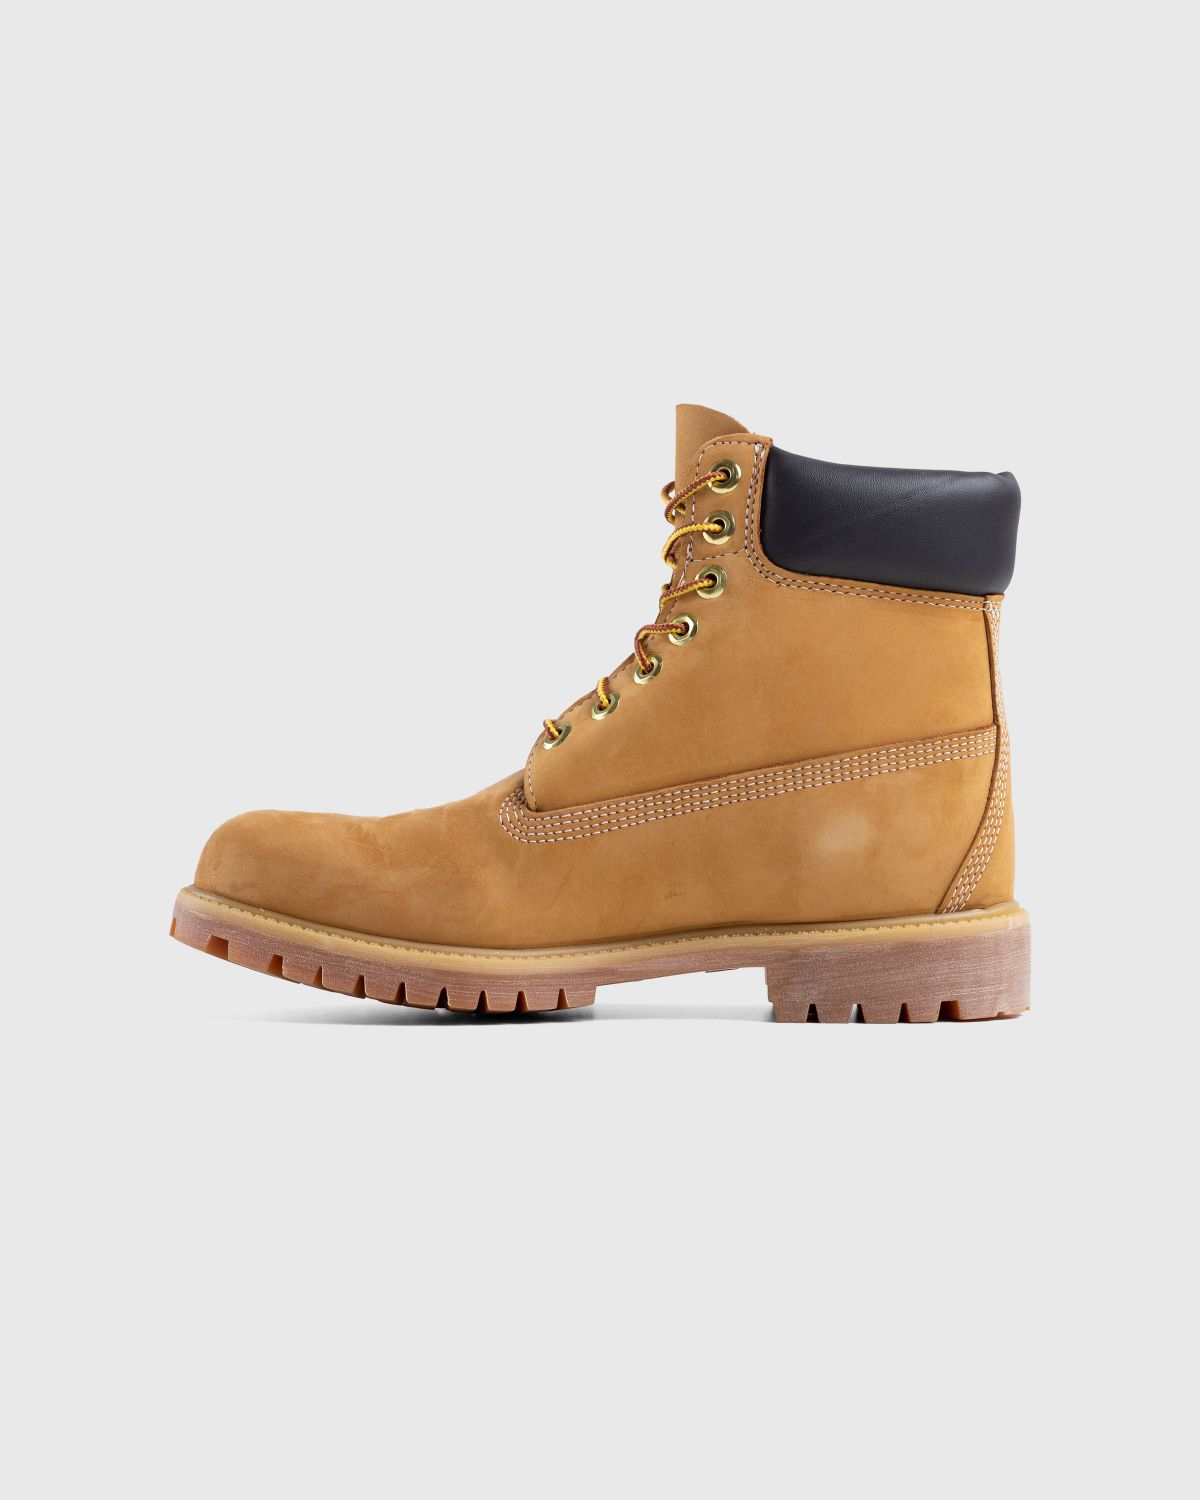 Timberland – 6 Inch Premium Boot Yellow - Boots - Yellow - Image 5